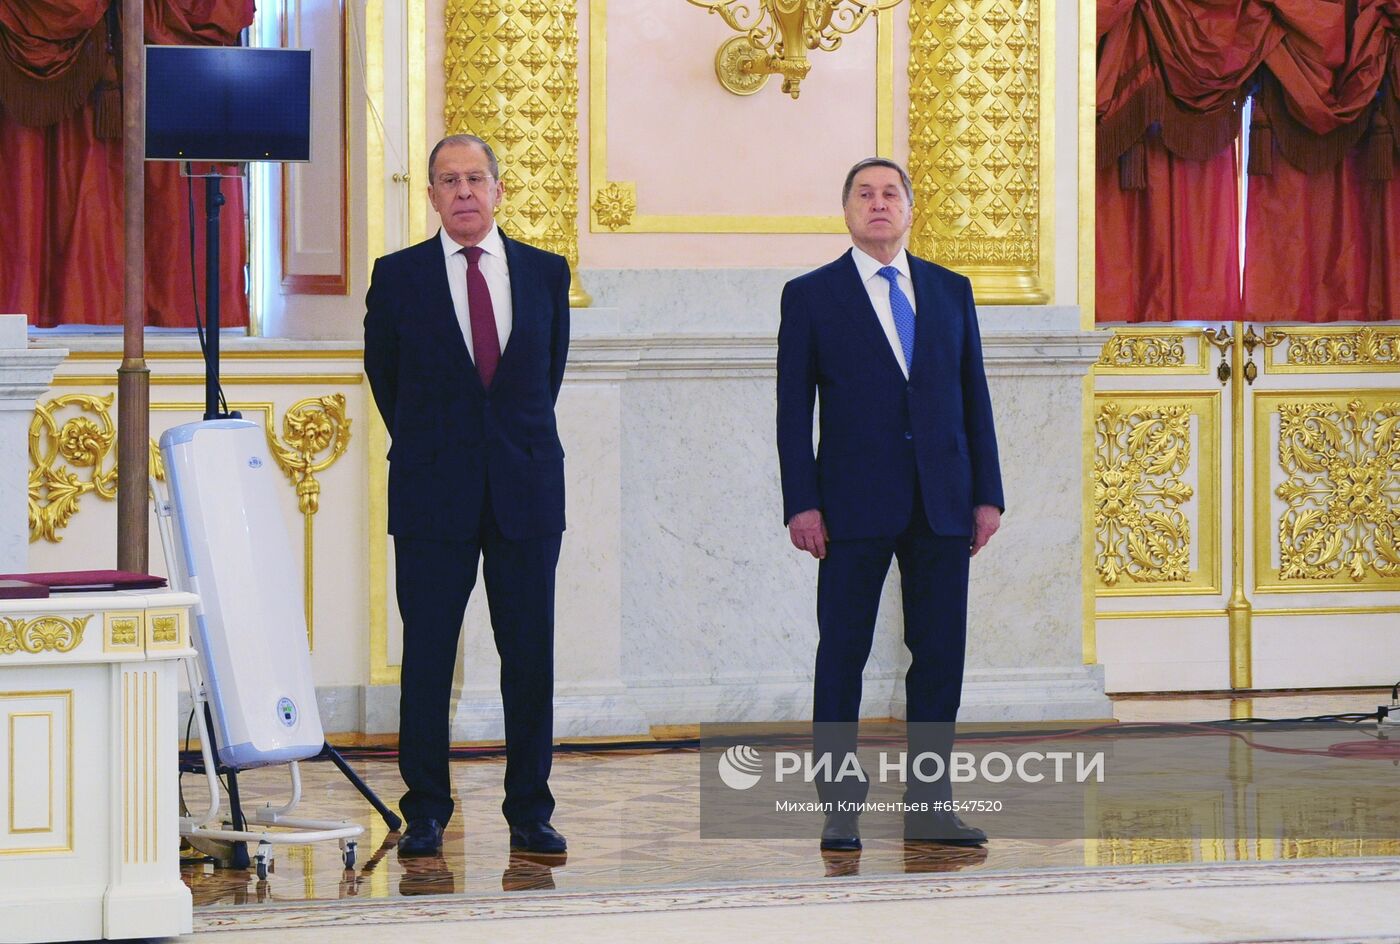 Президент РФ В. Путин принял верительные грамоты у 23 вновь прибывших послов иностранных государств